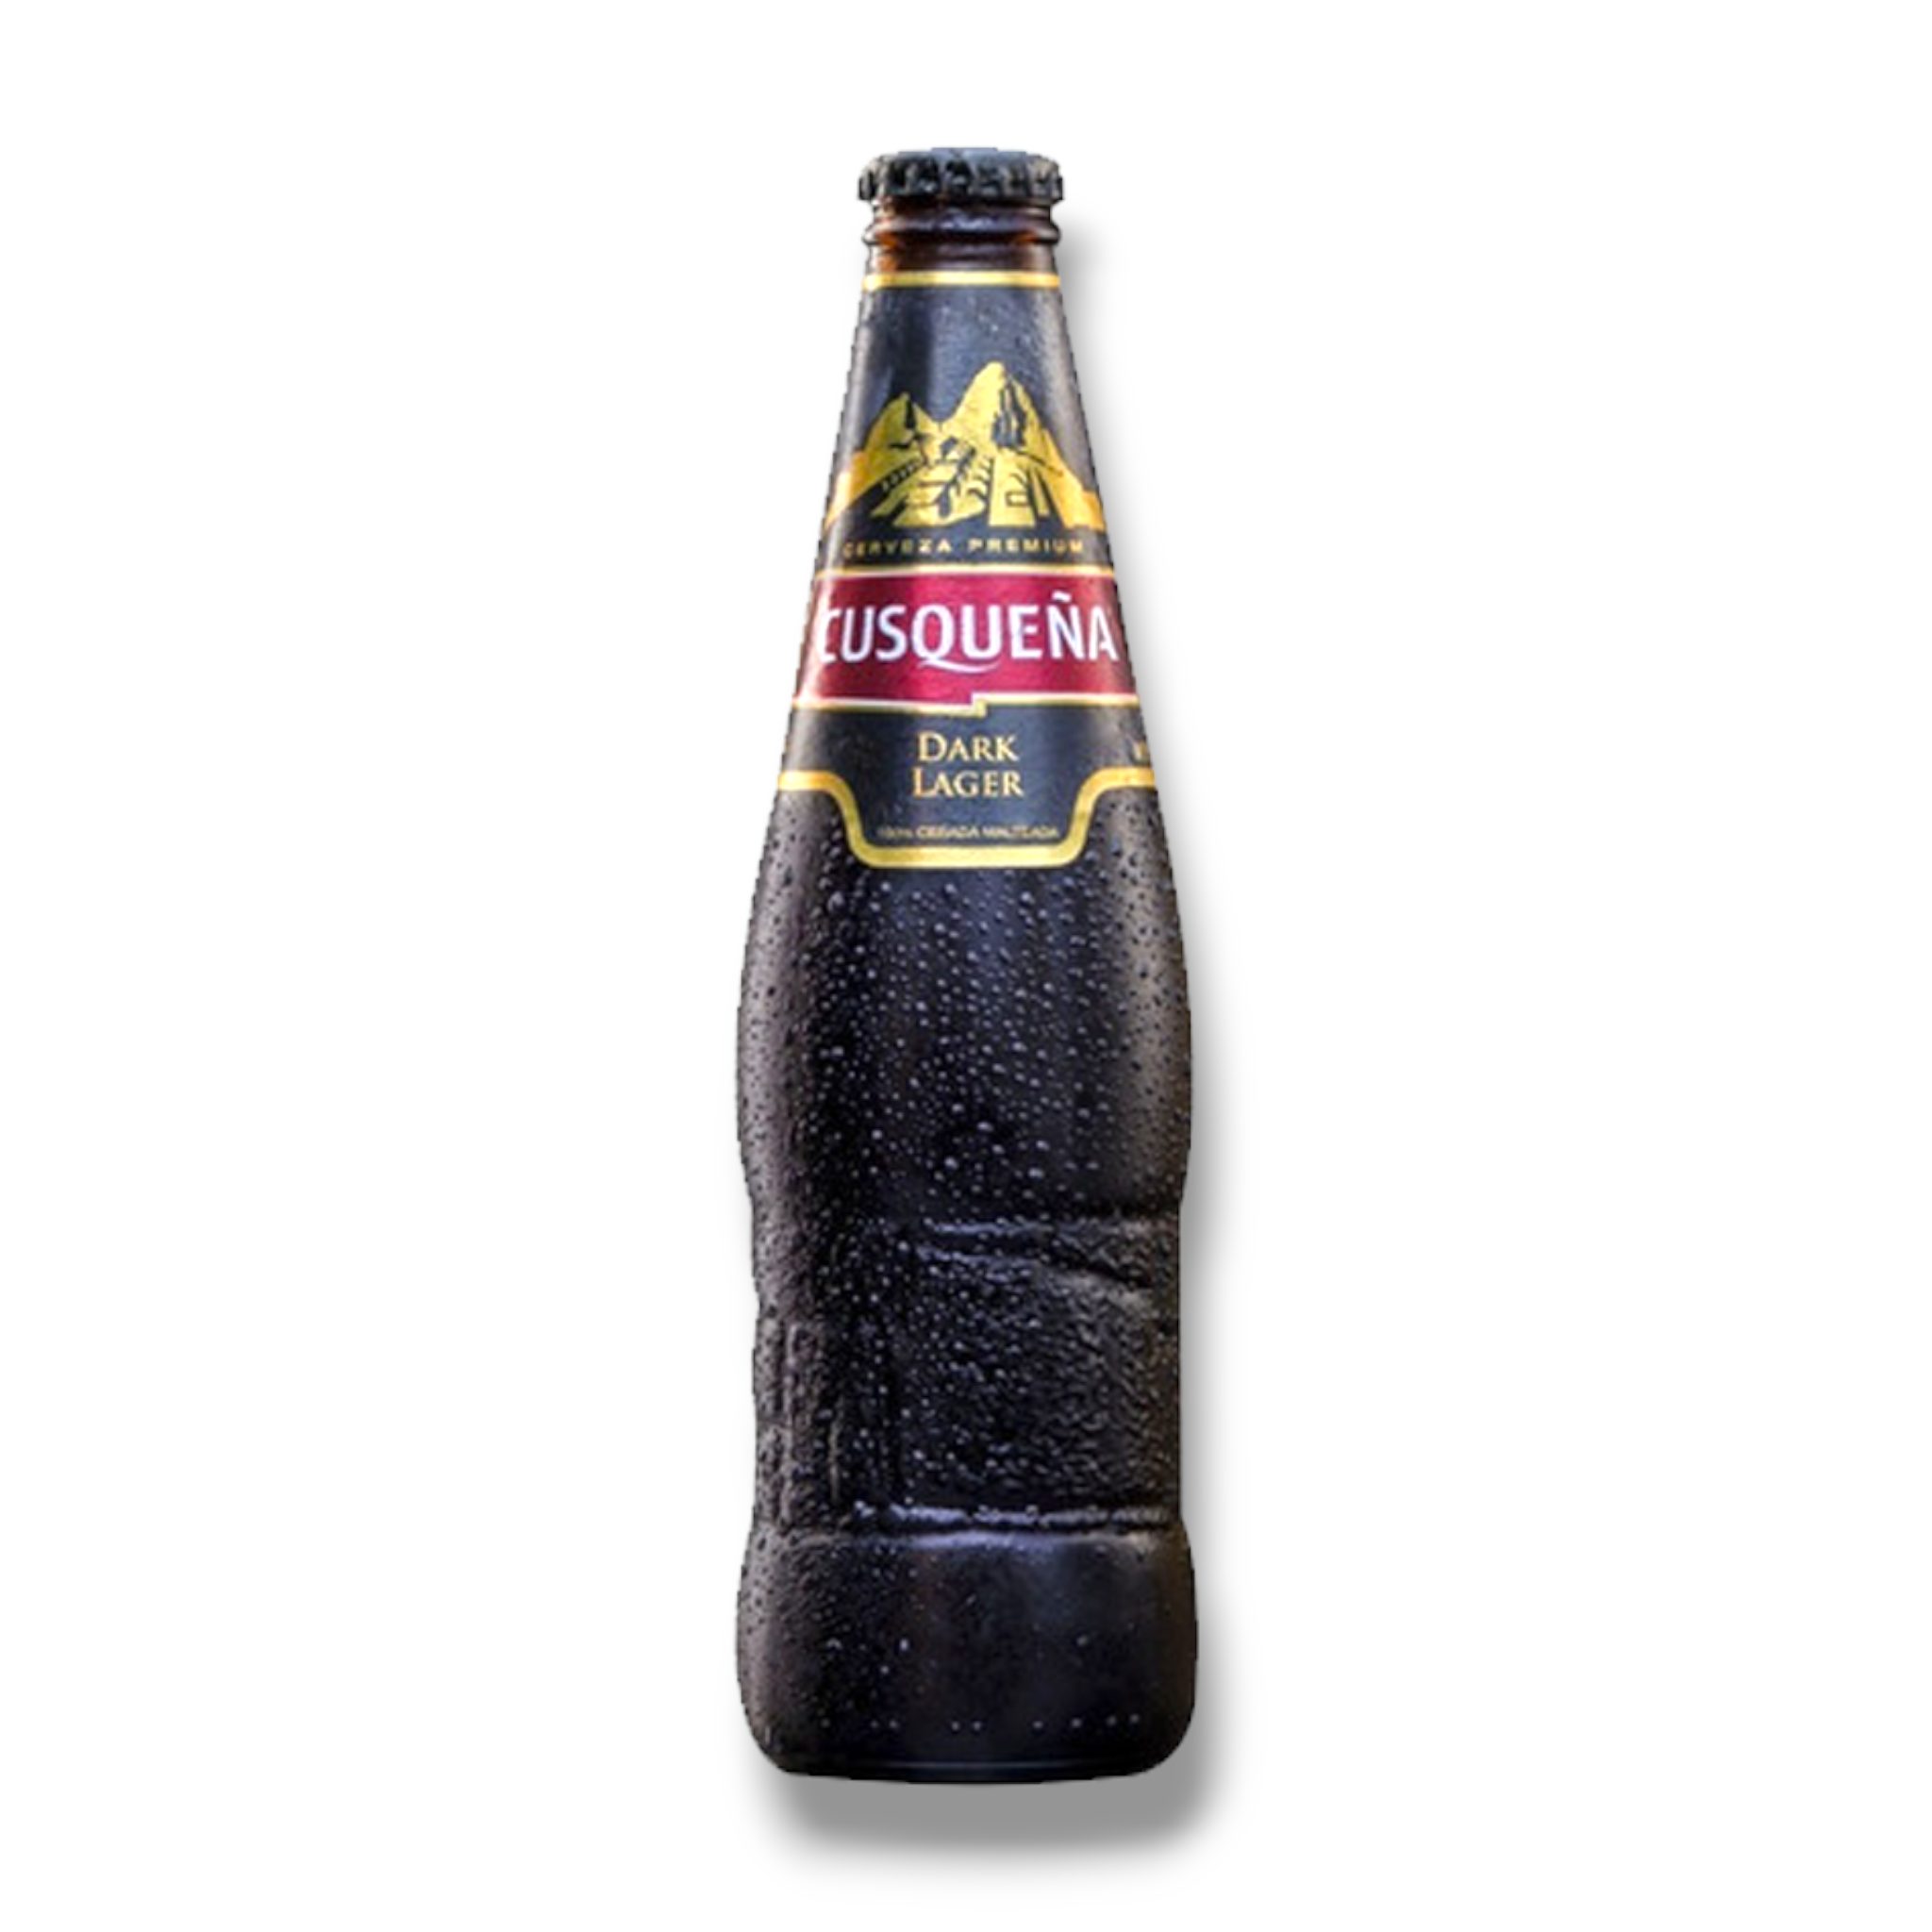 Cusquena Dark Lager 330ml - dunkles Bier aus Peru mit 5,6% Vol.